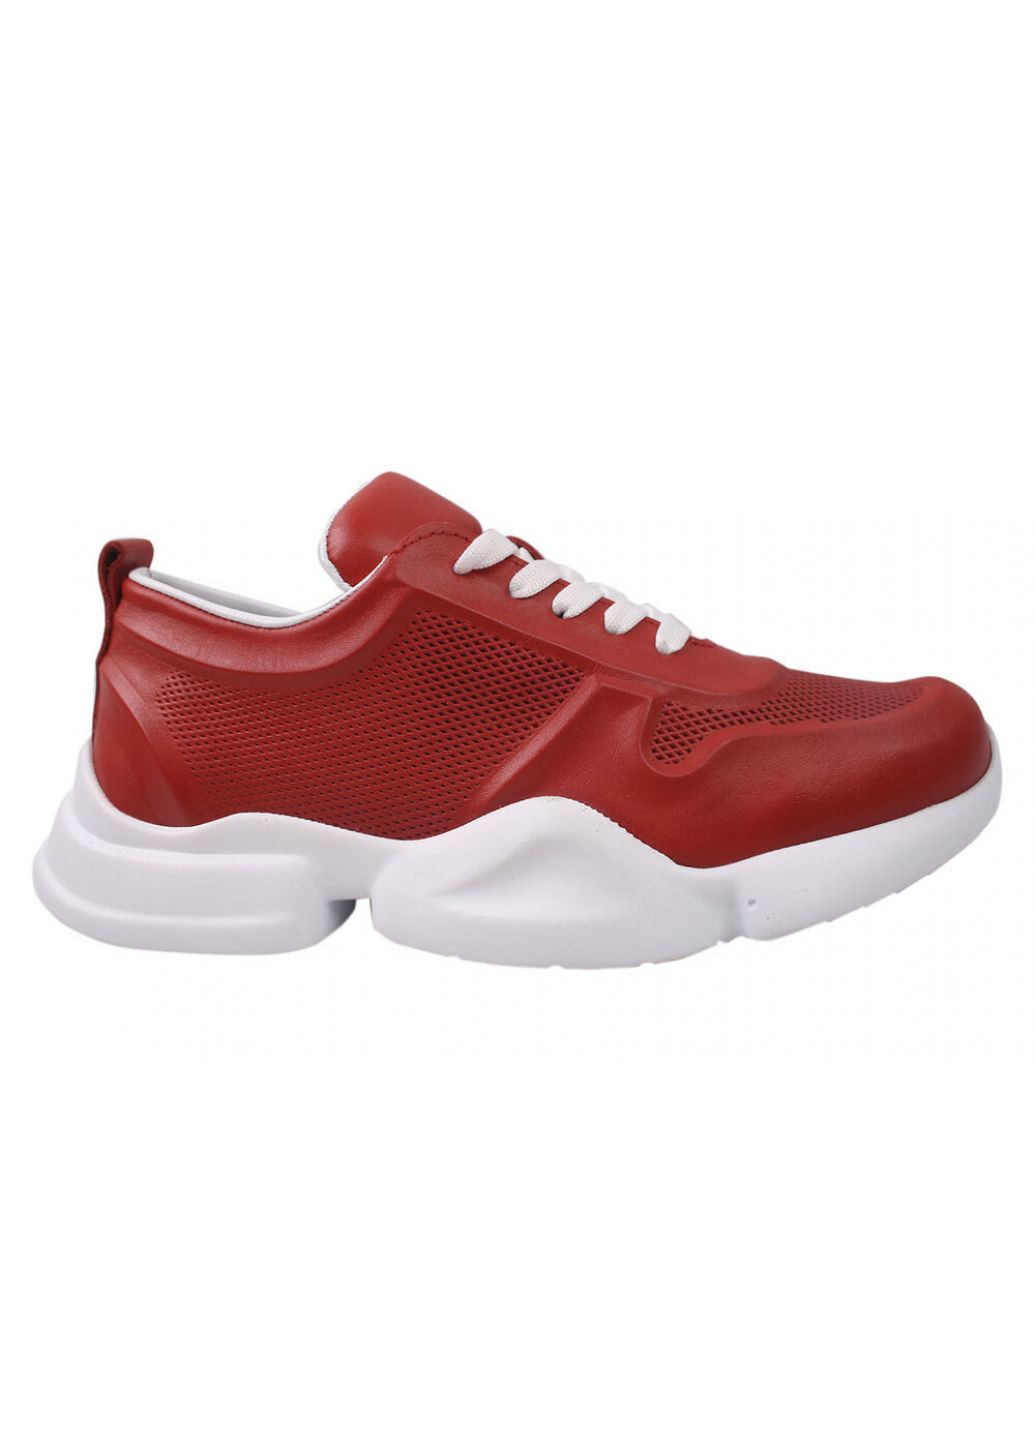 Червоні кросівки жіночі натуральна шкіра, колір червоний EuroModa 427-20DTS